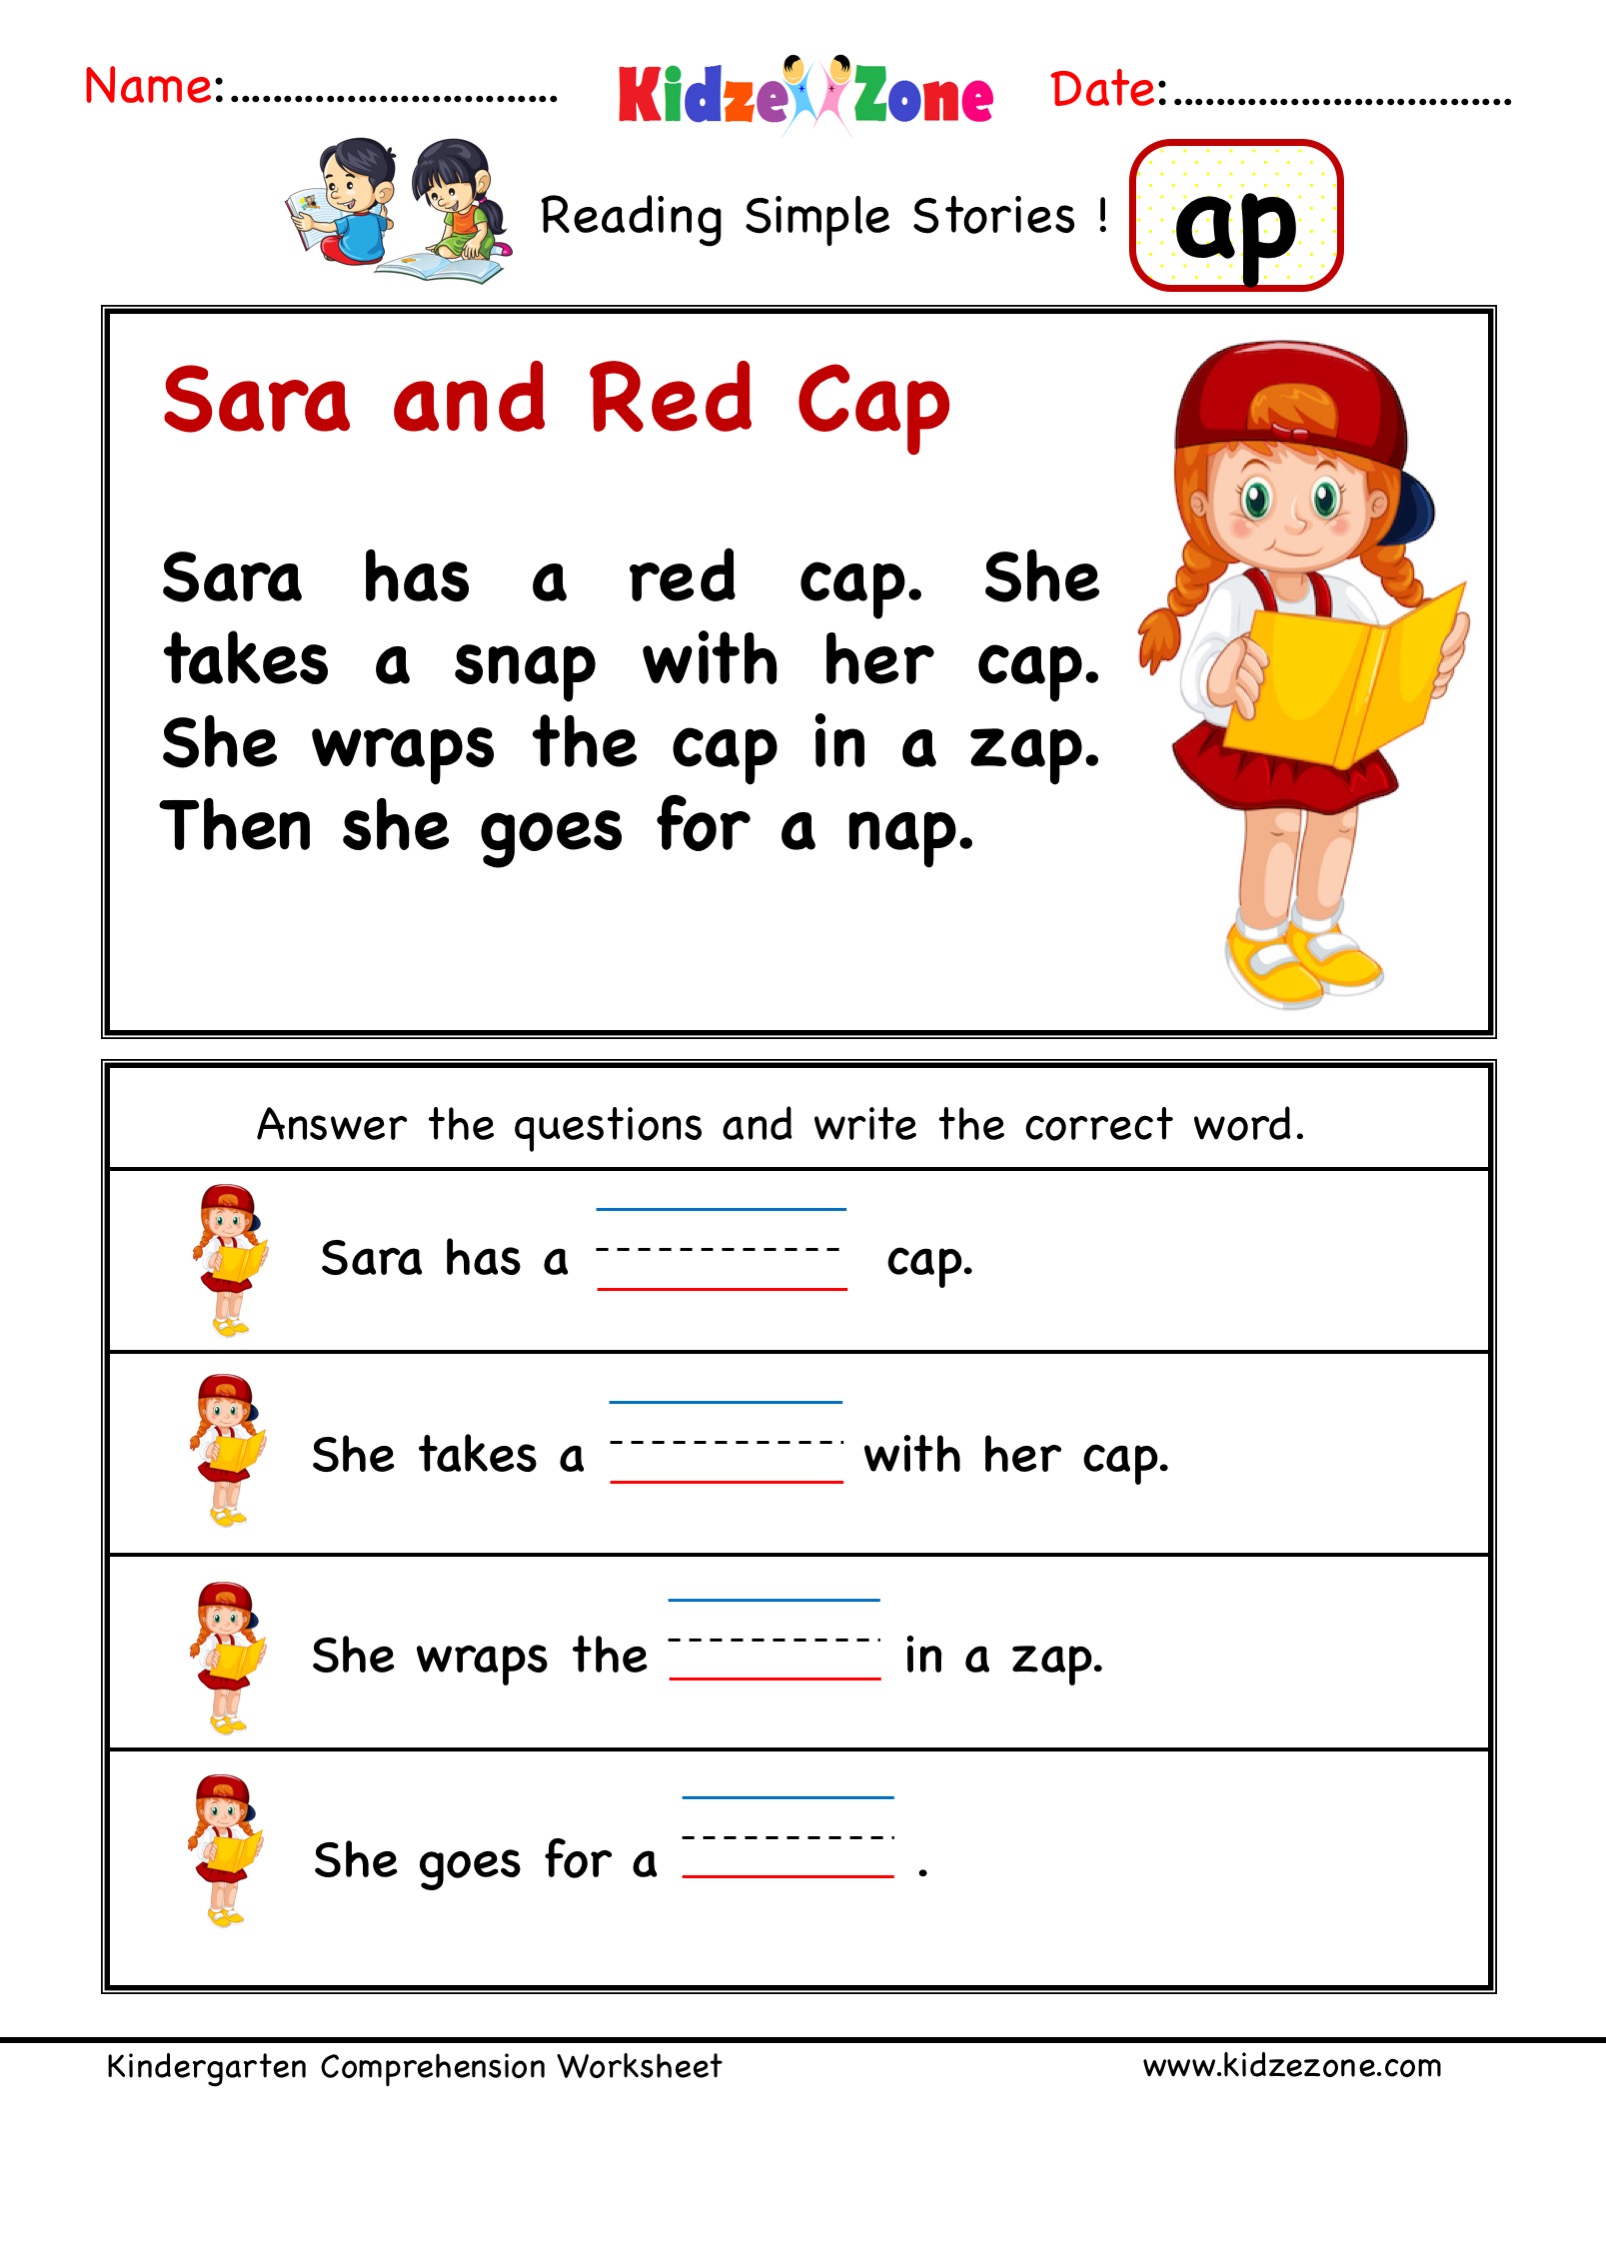 Kindergarten worksheets - ap word family - Comprehension